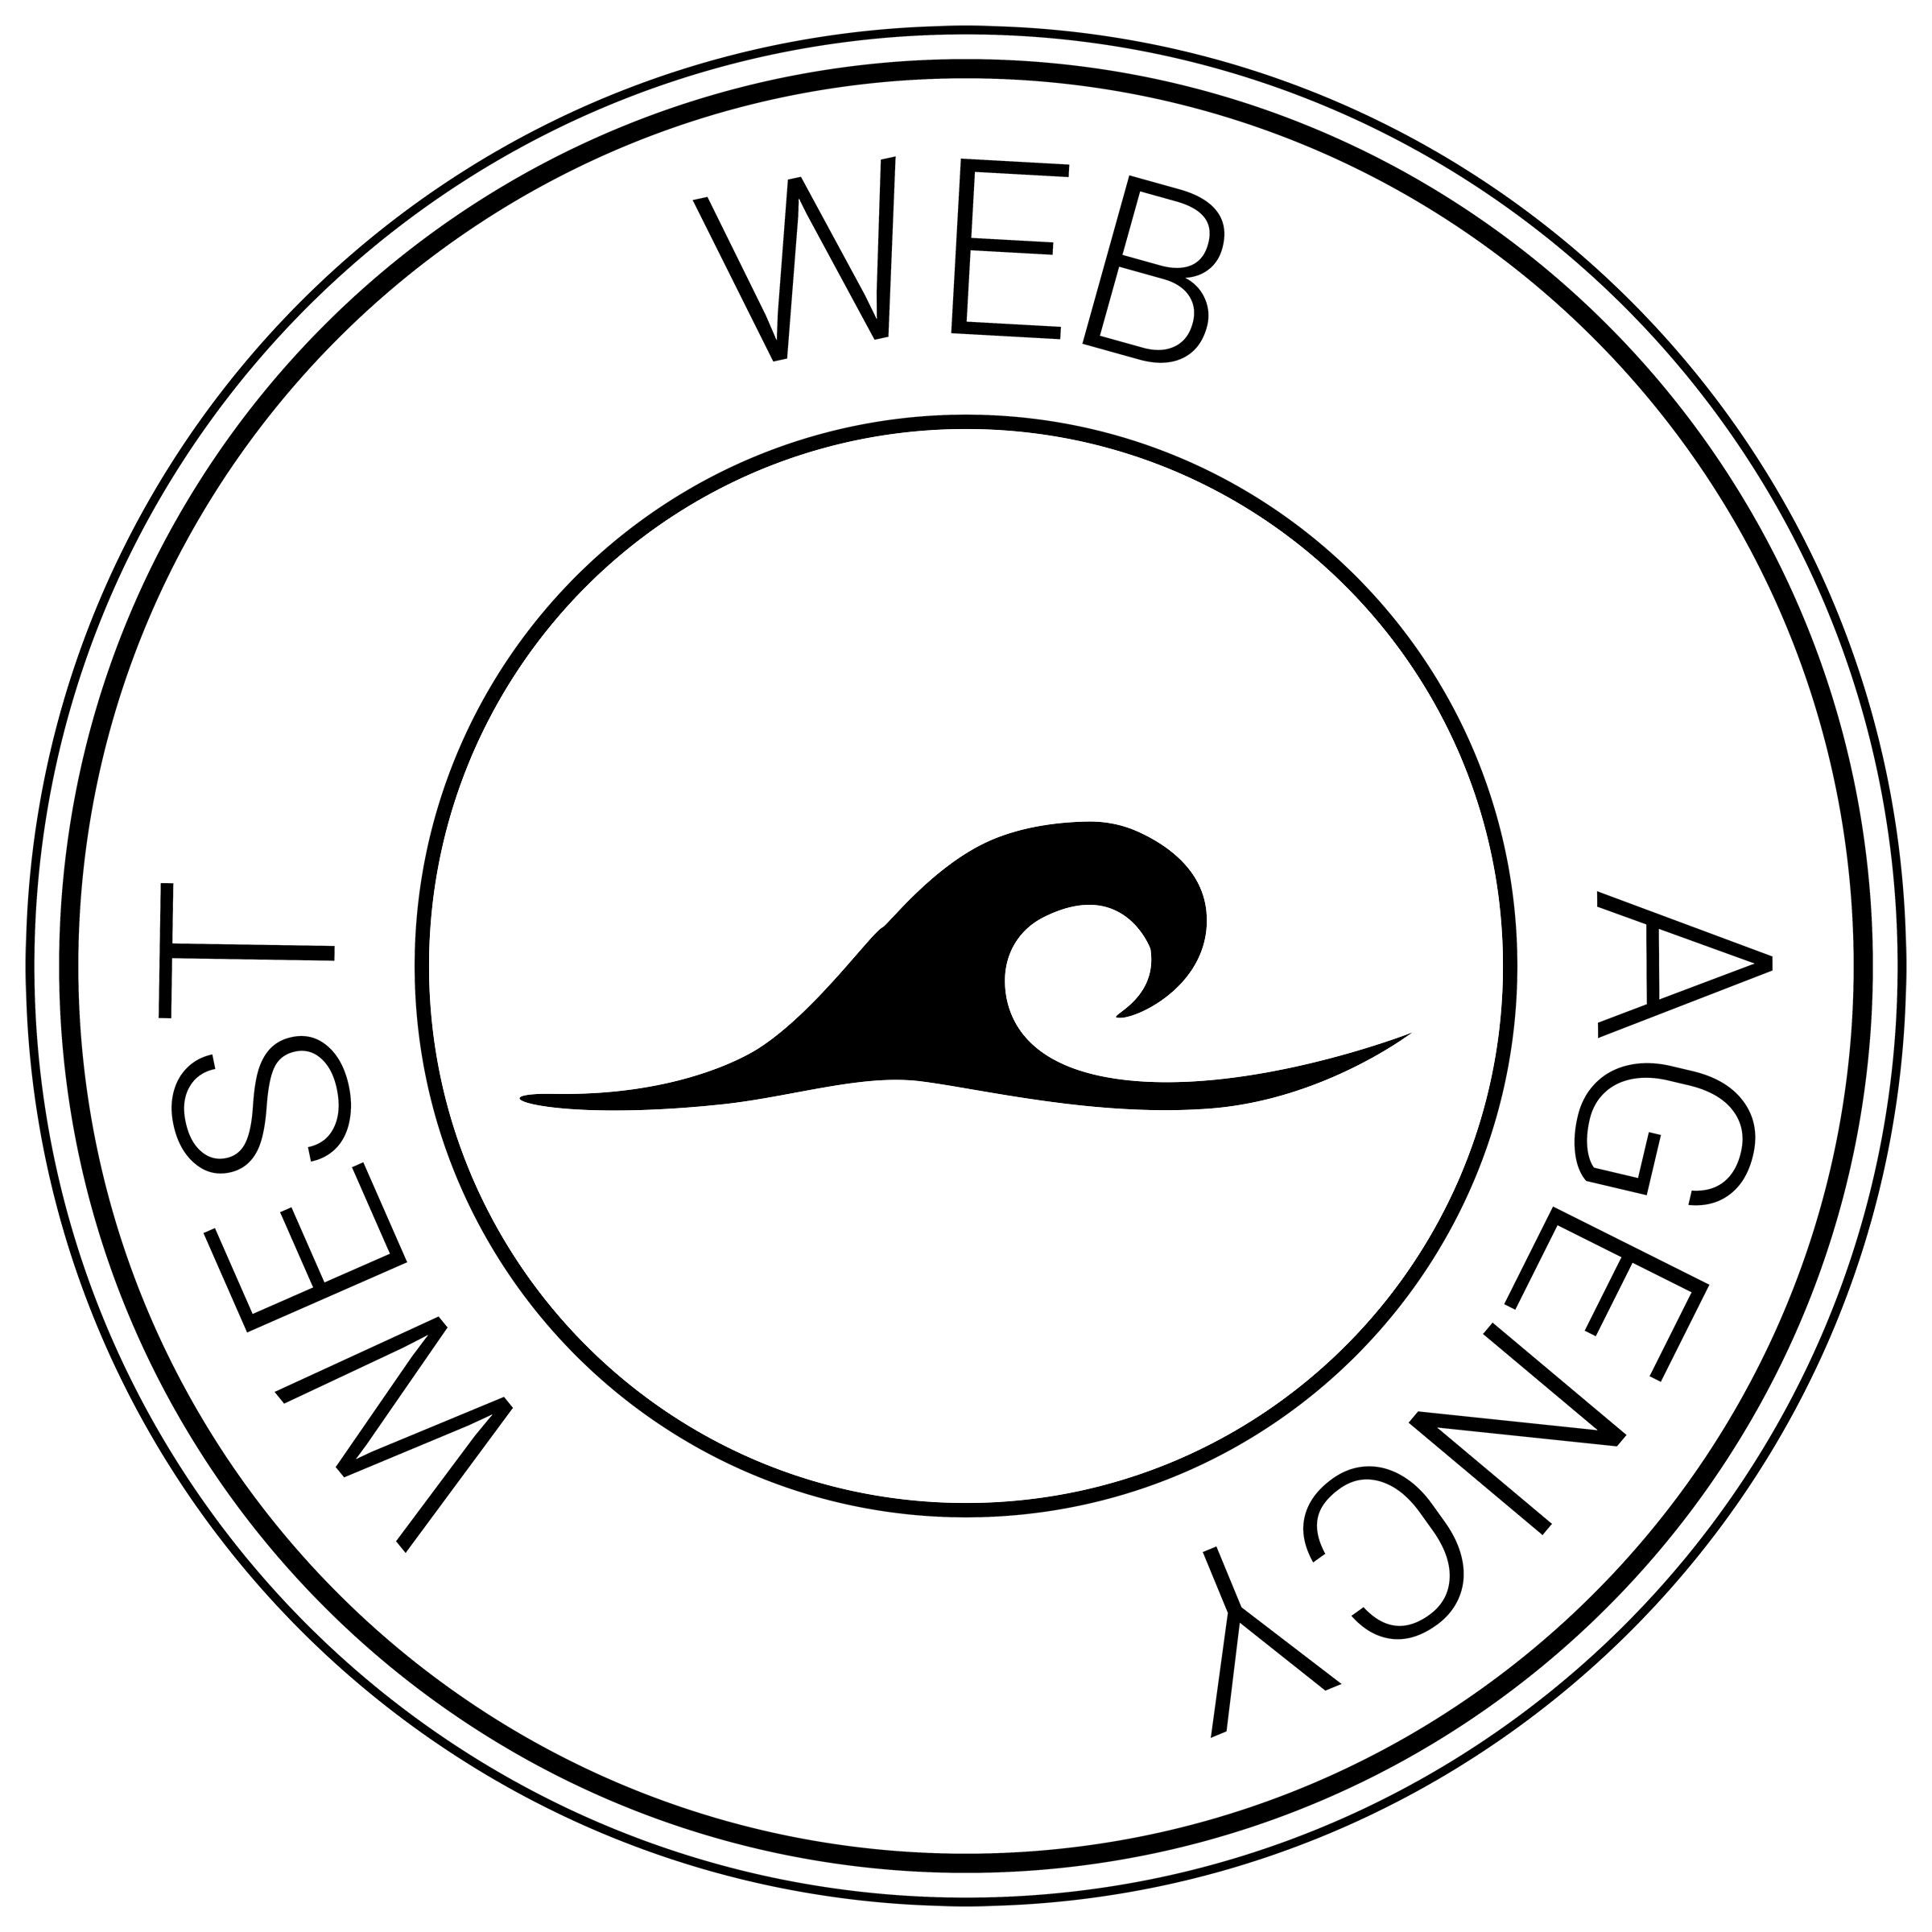 West Web Agency